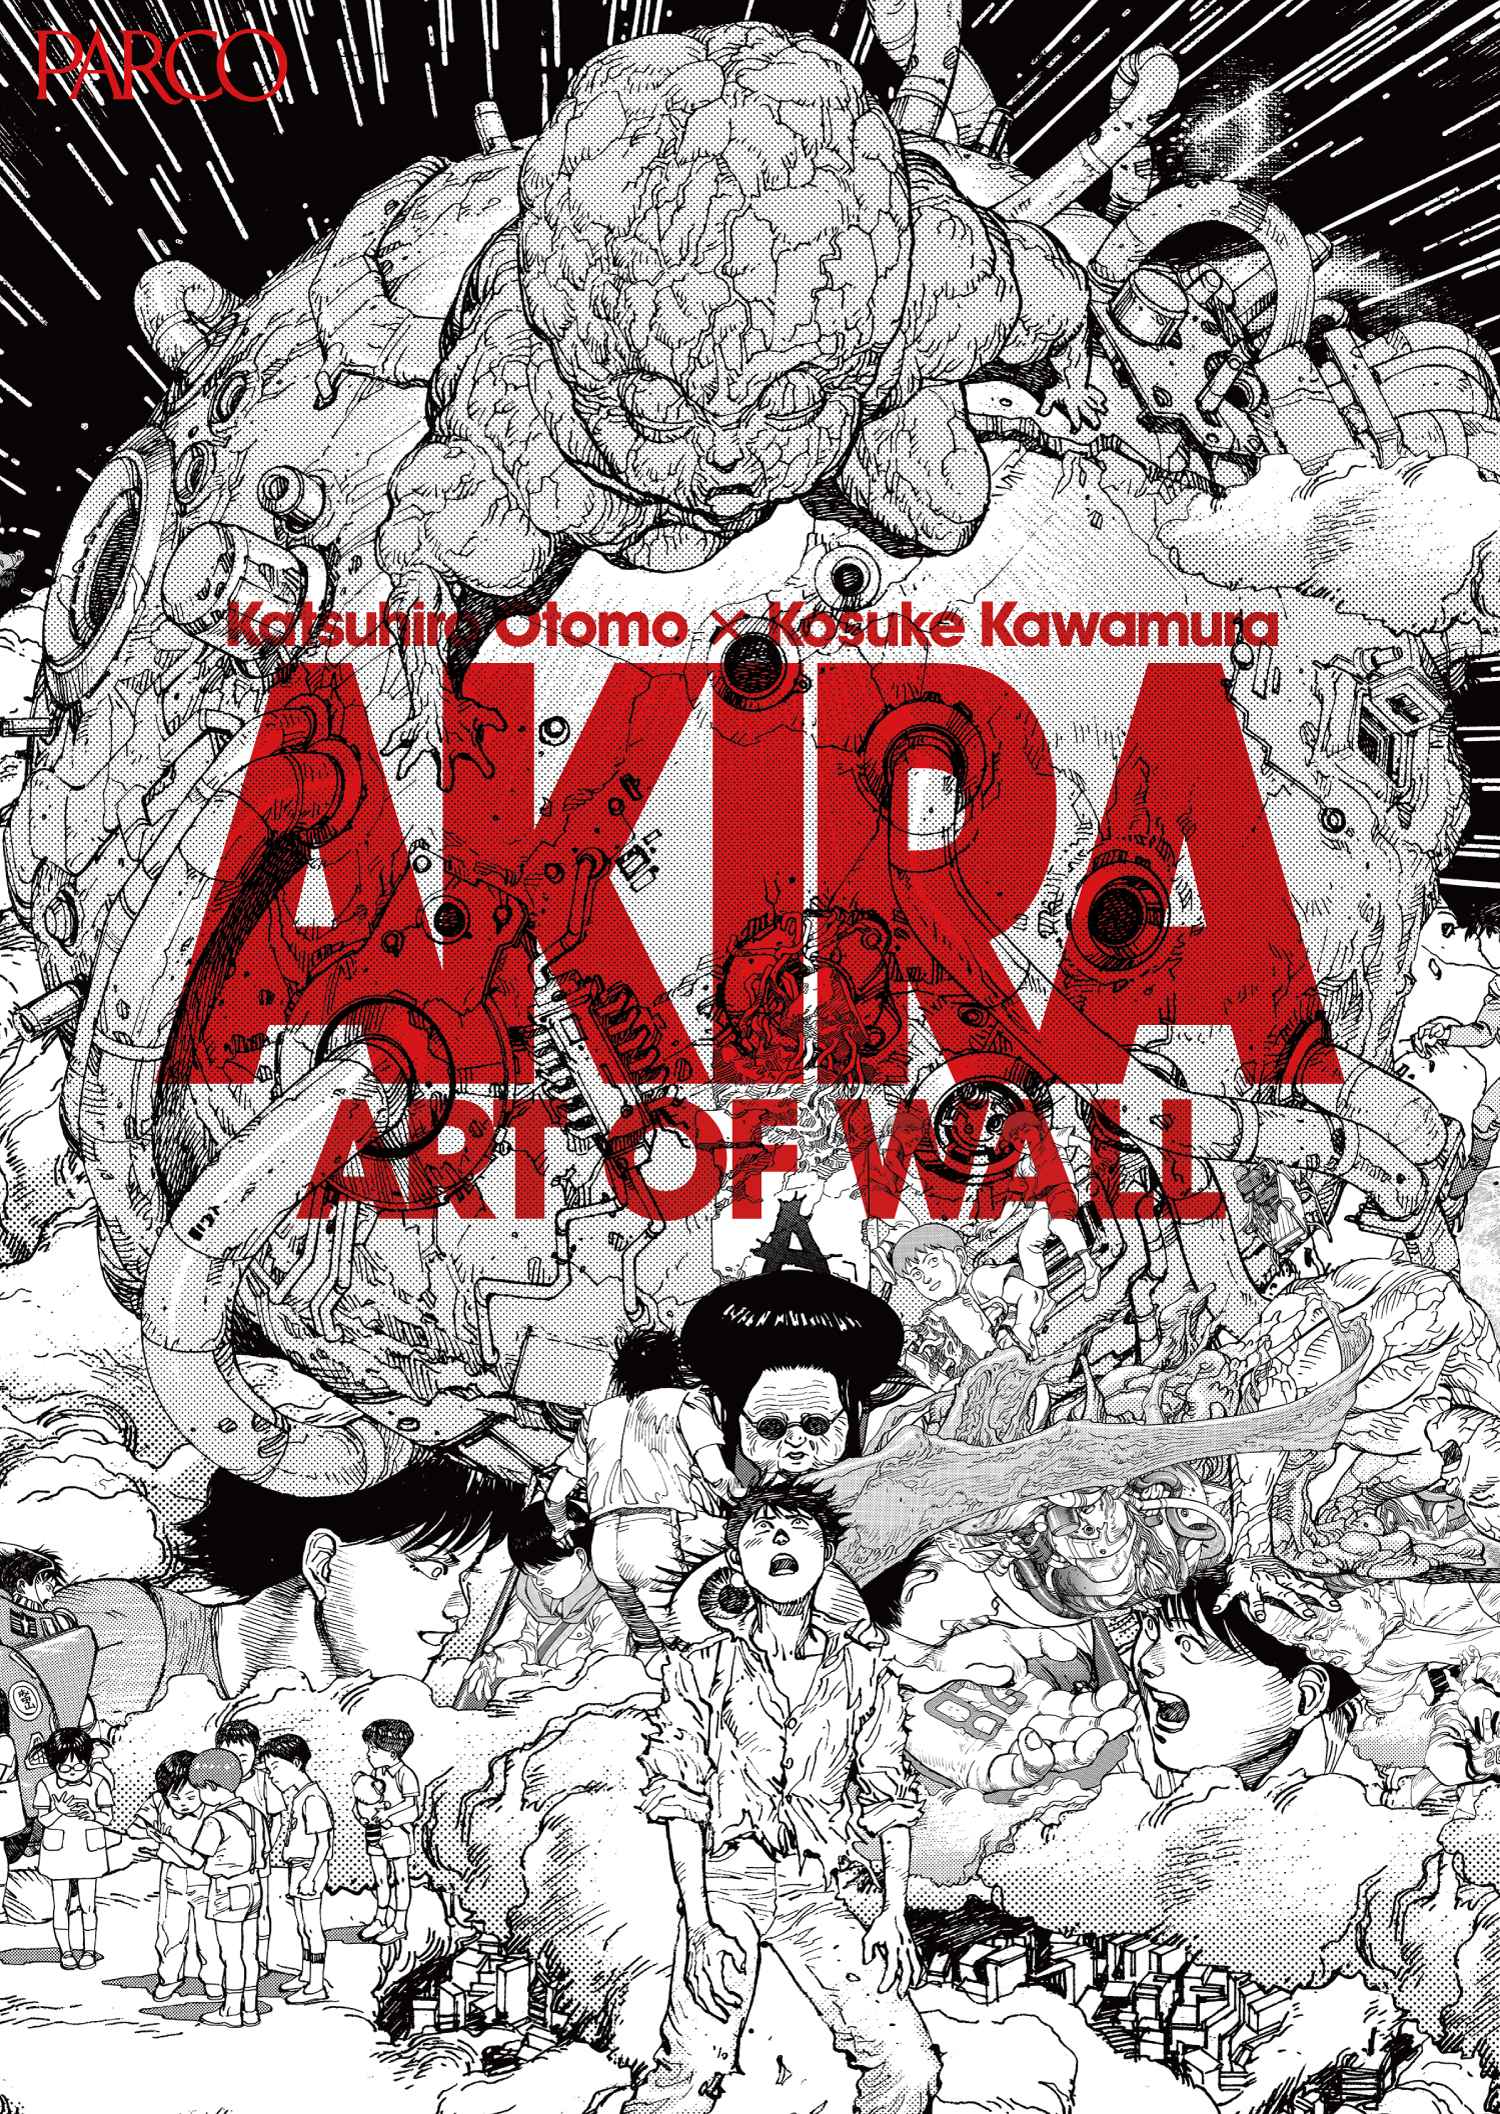 大友克洋氏 河村康輔氏の巨大コラージュ作品を展示 Akira Art Of Wall Otomo Katsuhiro Kosuke Kawamura Akira Art Exhibition Pictures